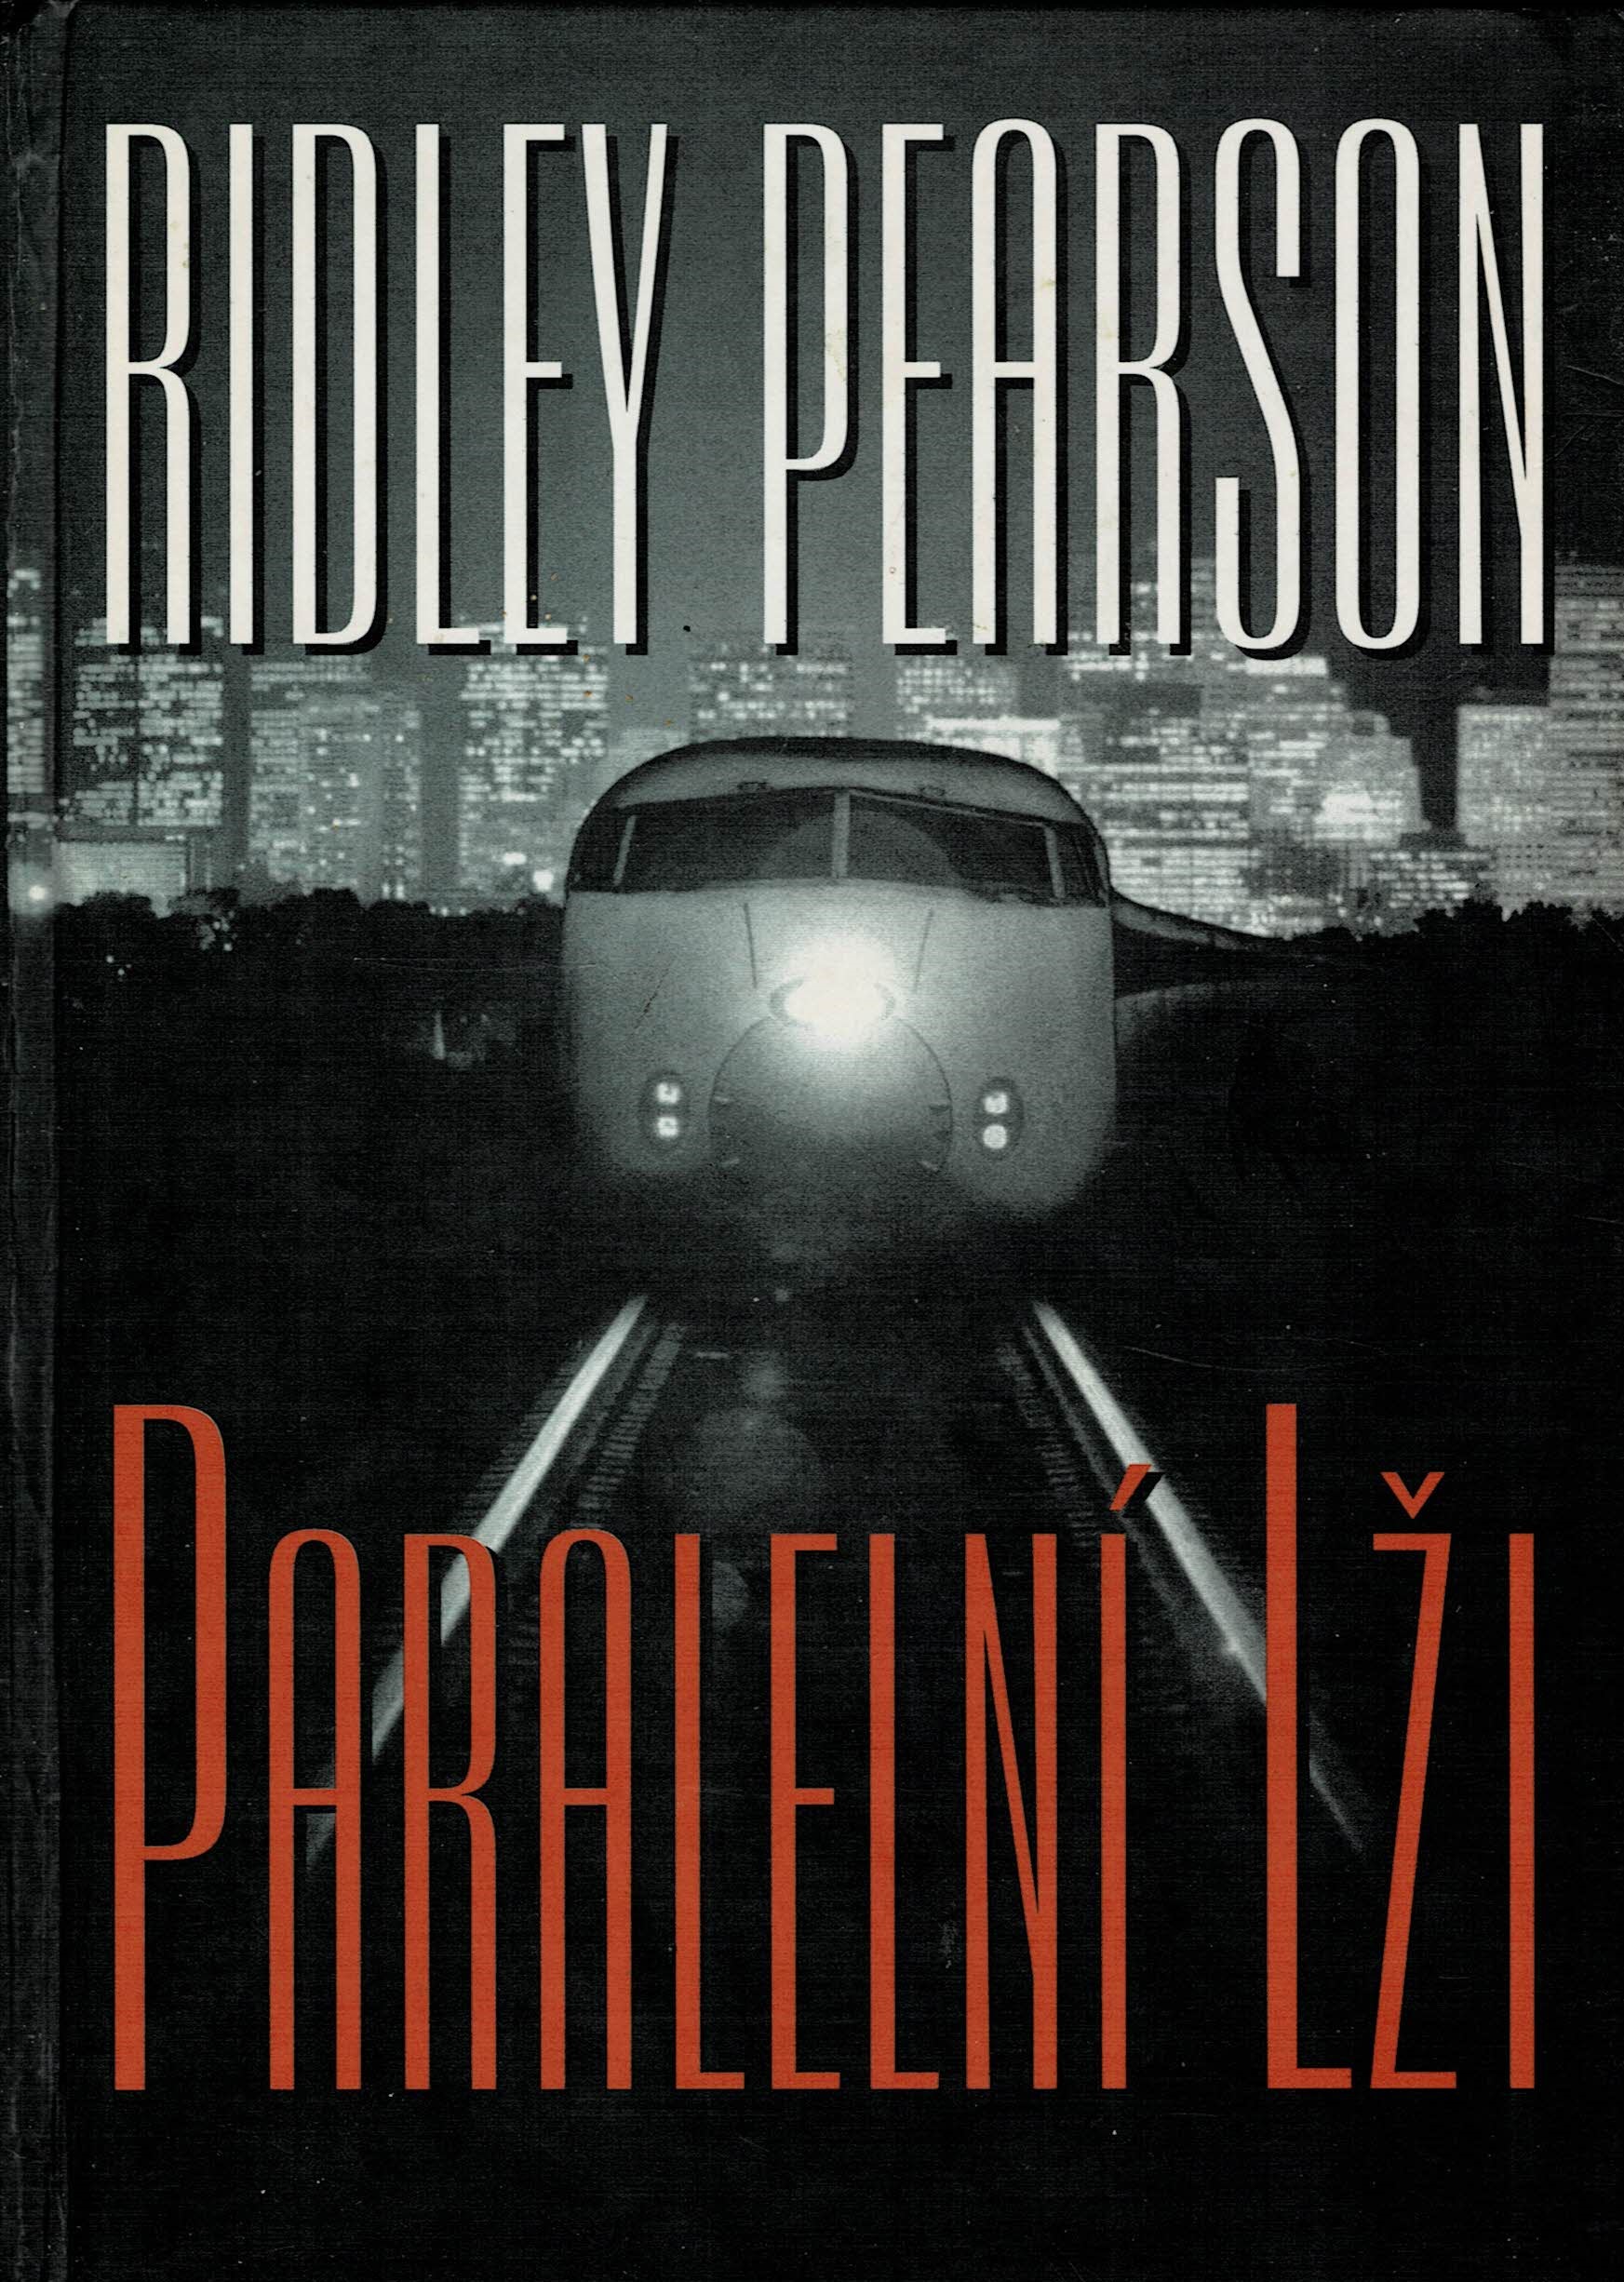 Pearson, Ridley: Paralelní lži